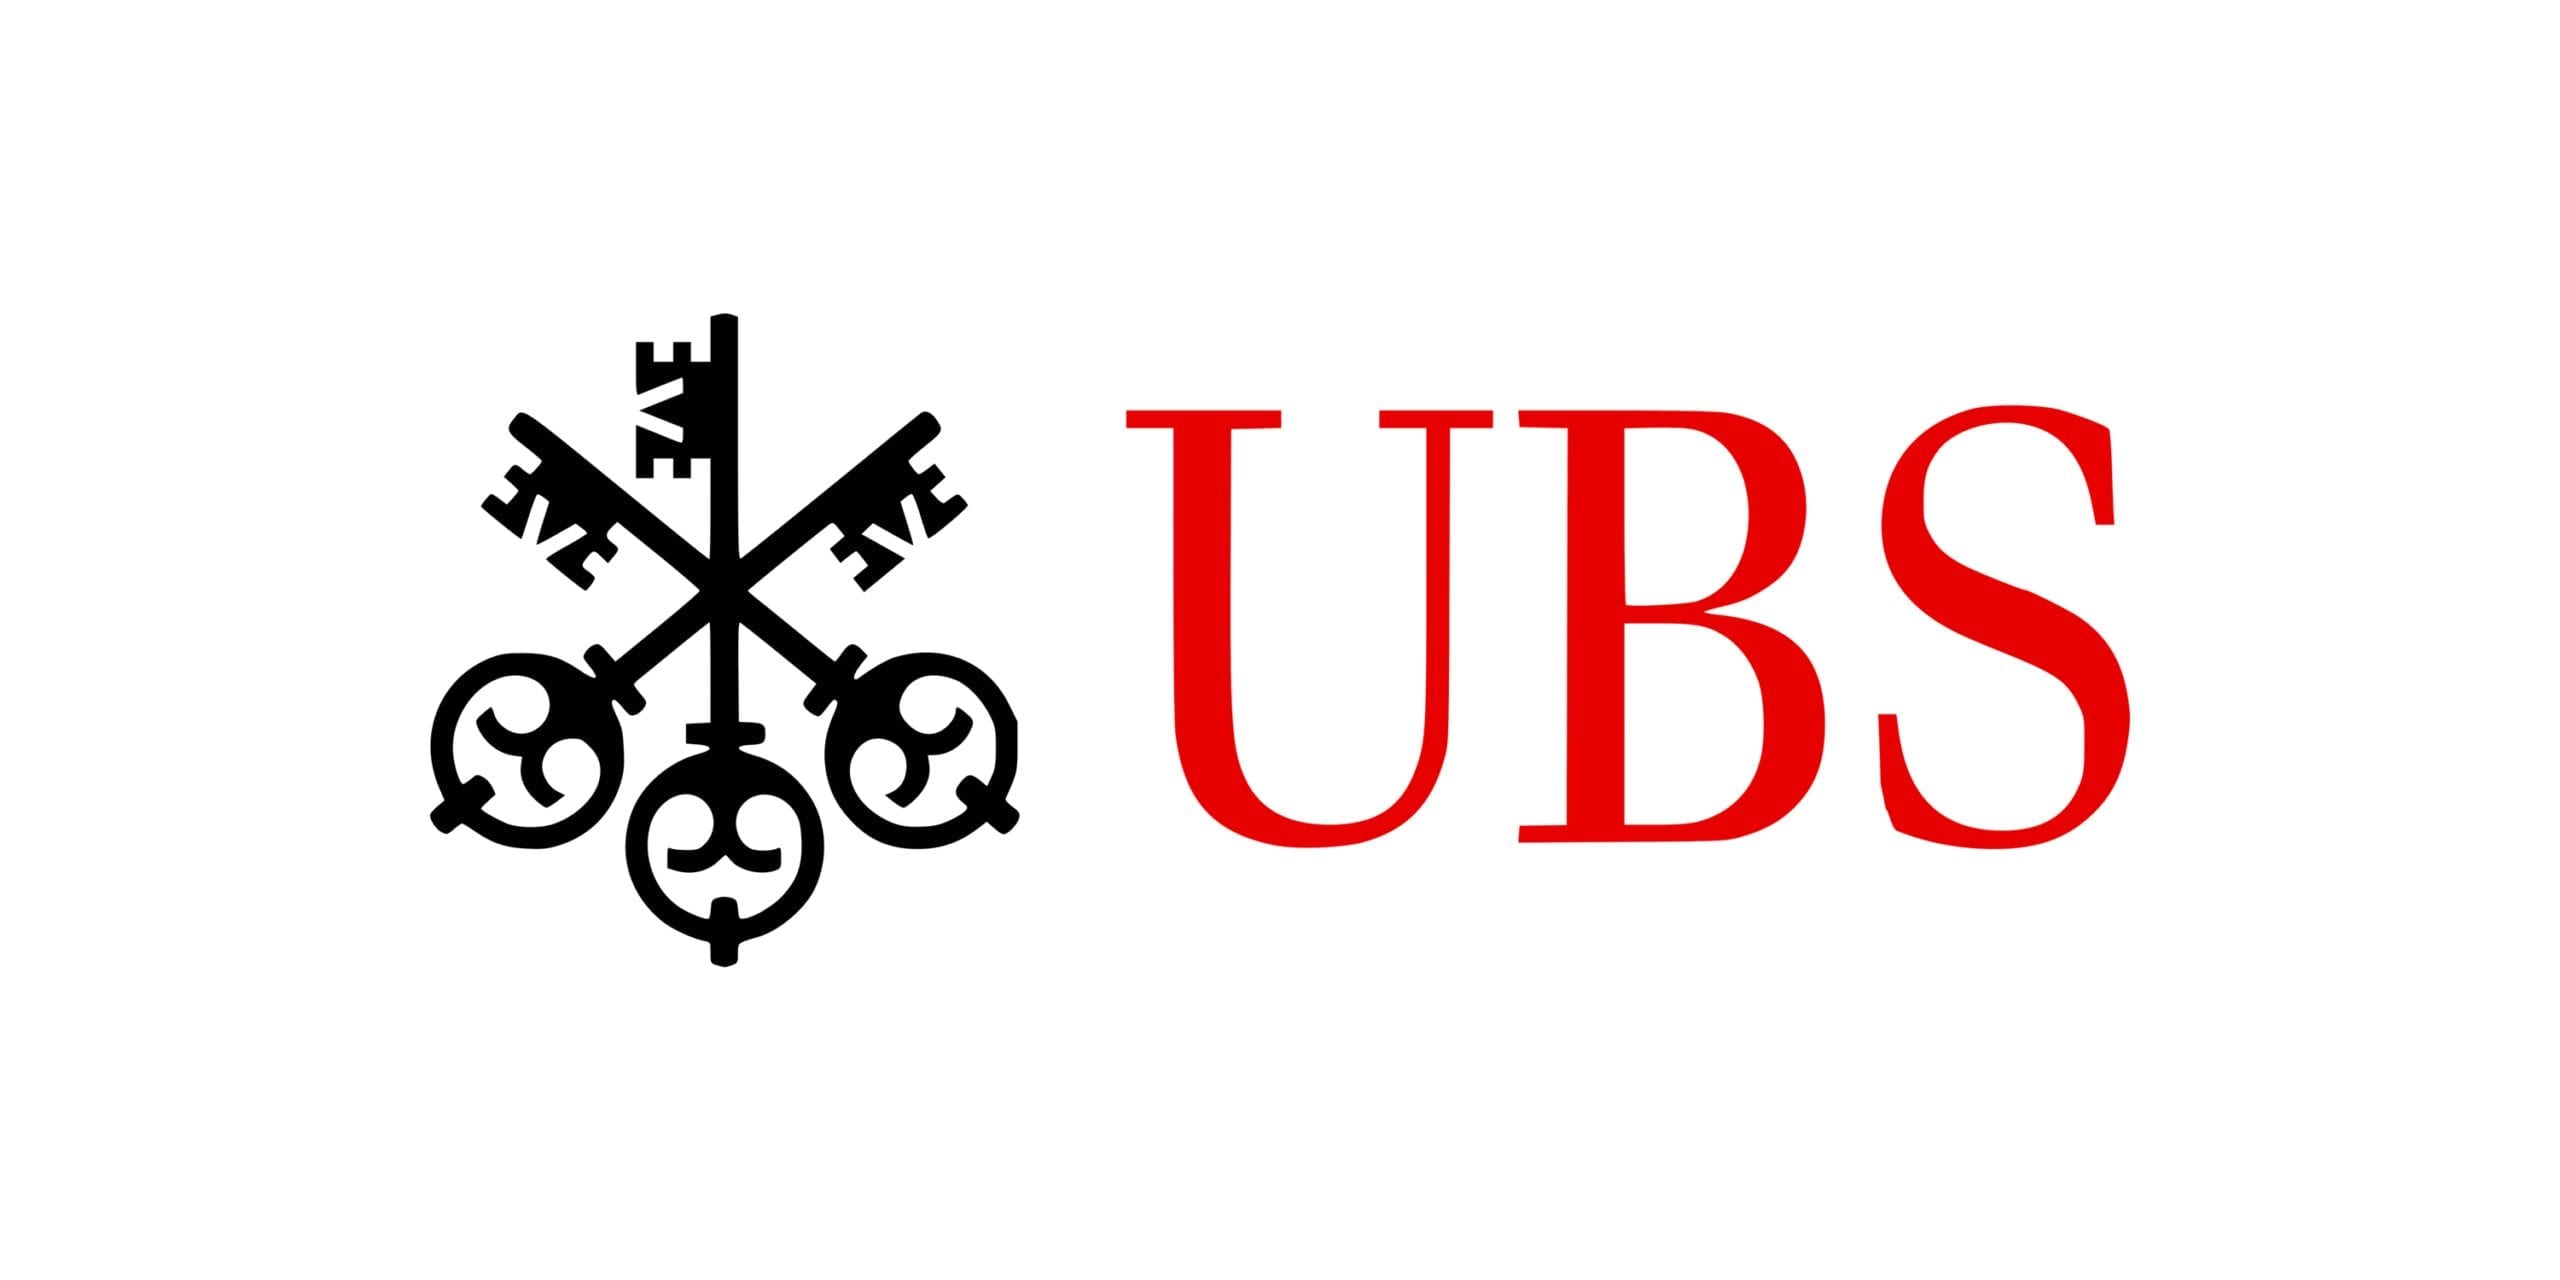 Union Bank of Switzerland (UBS) logo